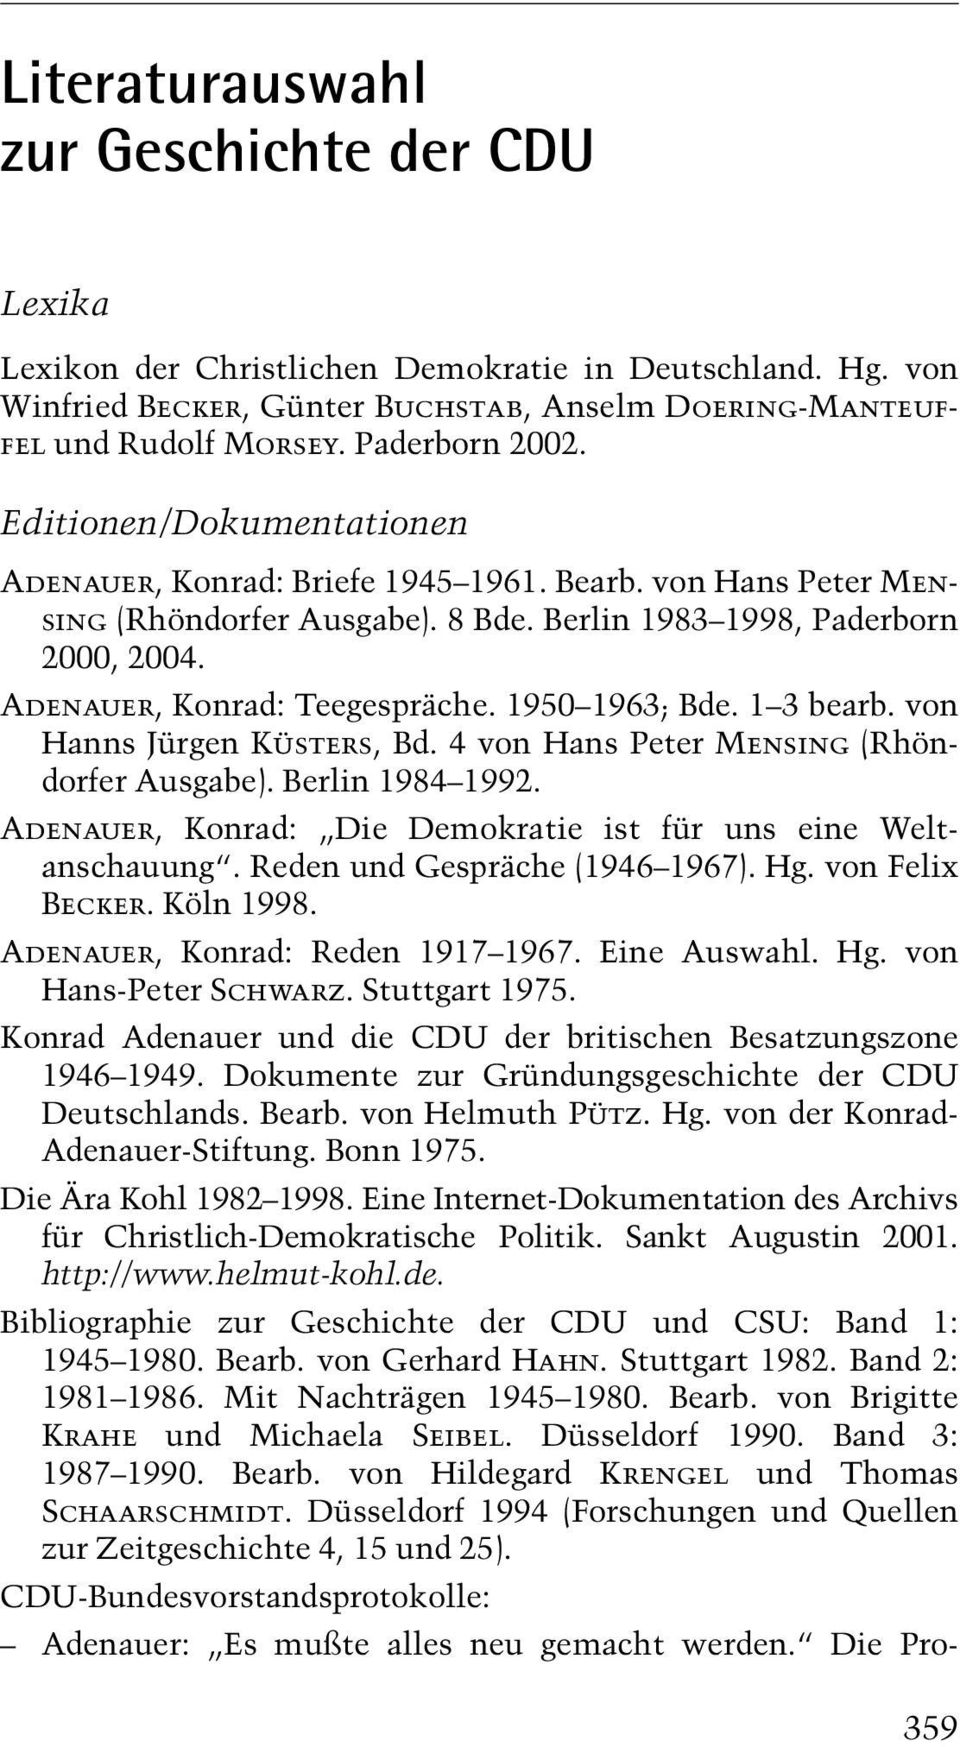 Adenauer, Konrad: Teegespräche. 1950±1963; Bde. 1±3 bearb. von Hanns Jürgen Küsters, Bd. 4 von Hans Peter Mensing (Rhöndorfer Ausgabe). Berlin 1984±1992.